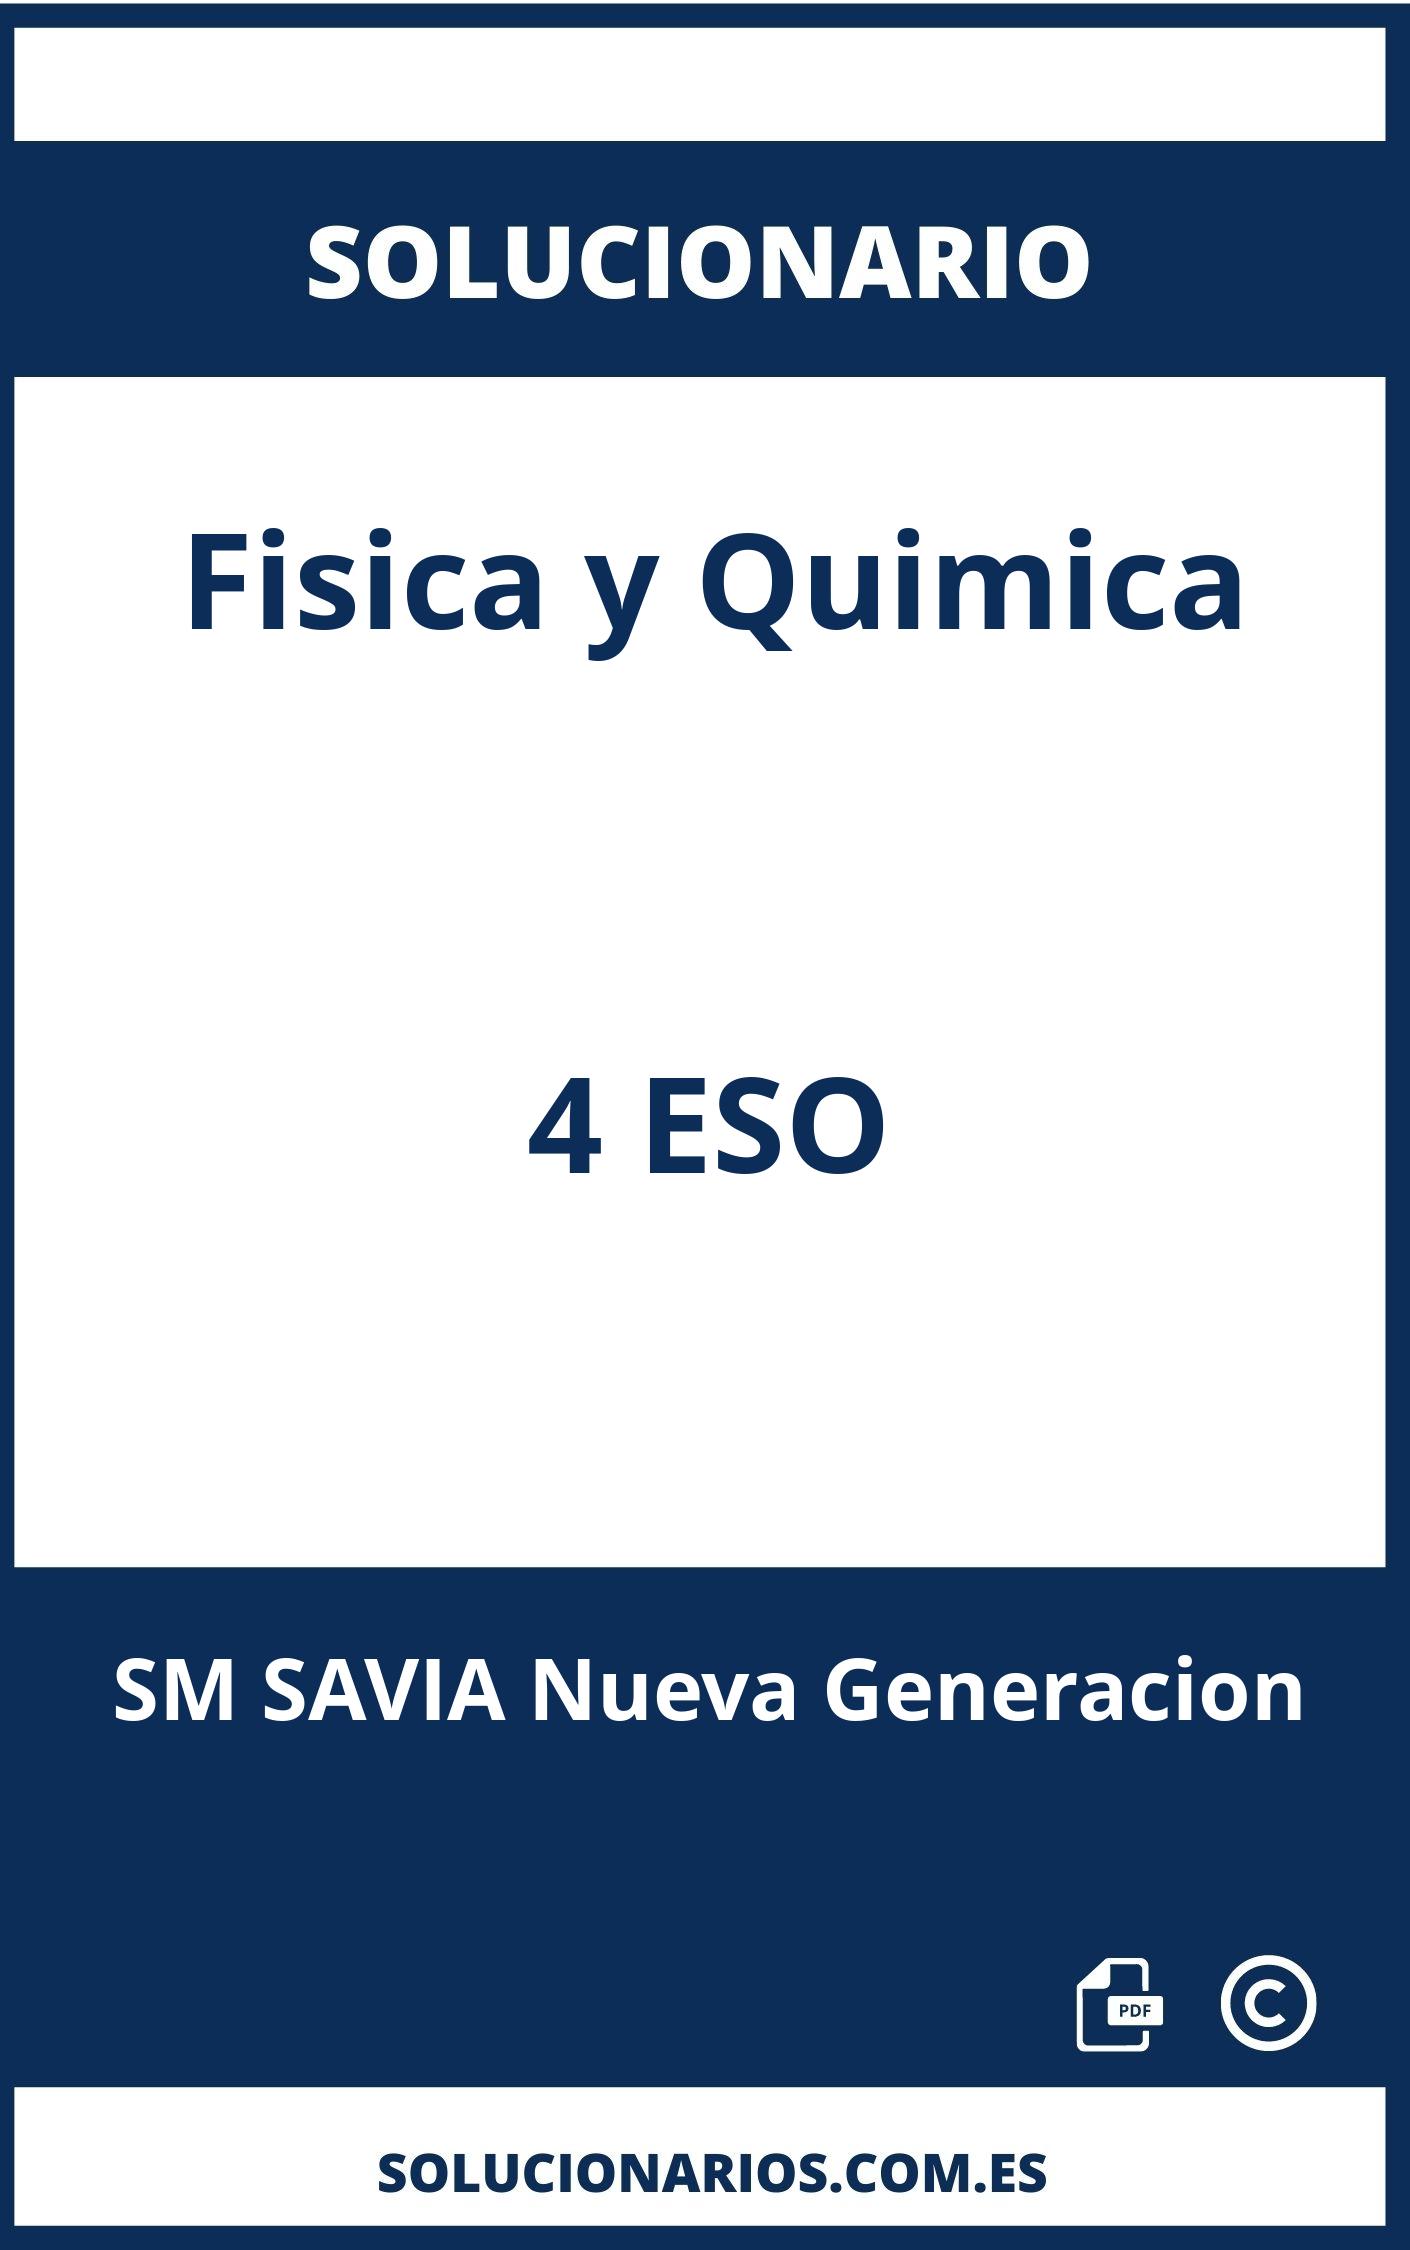 Solucionario Fisica y Quimica 4 ESO SM SAVIA Nueva Generacion